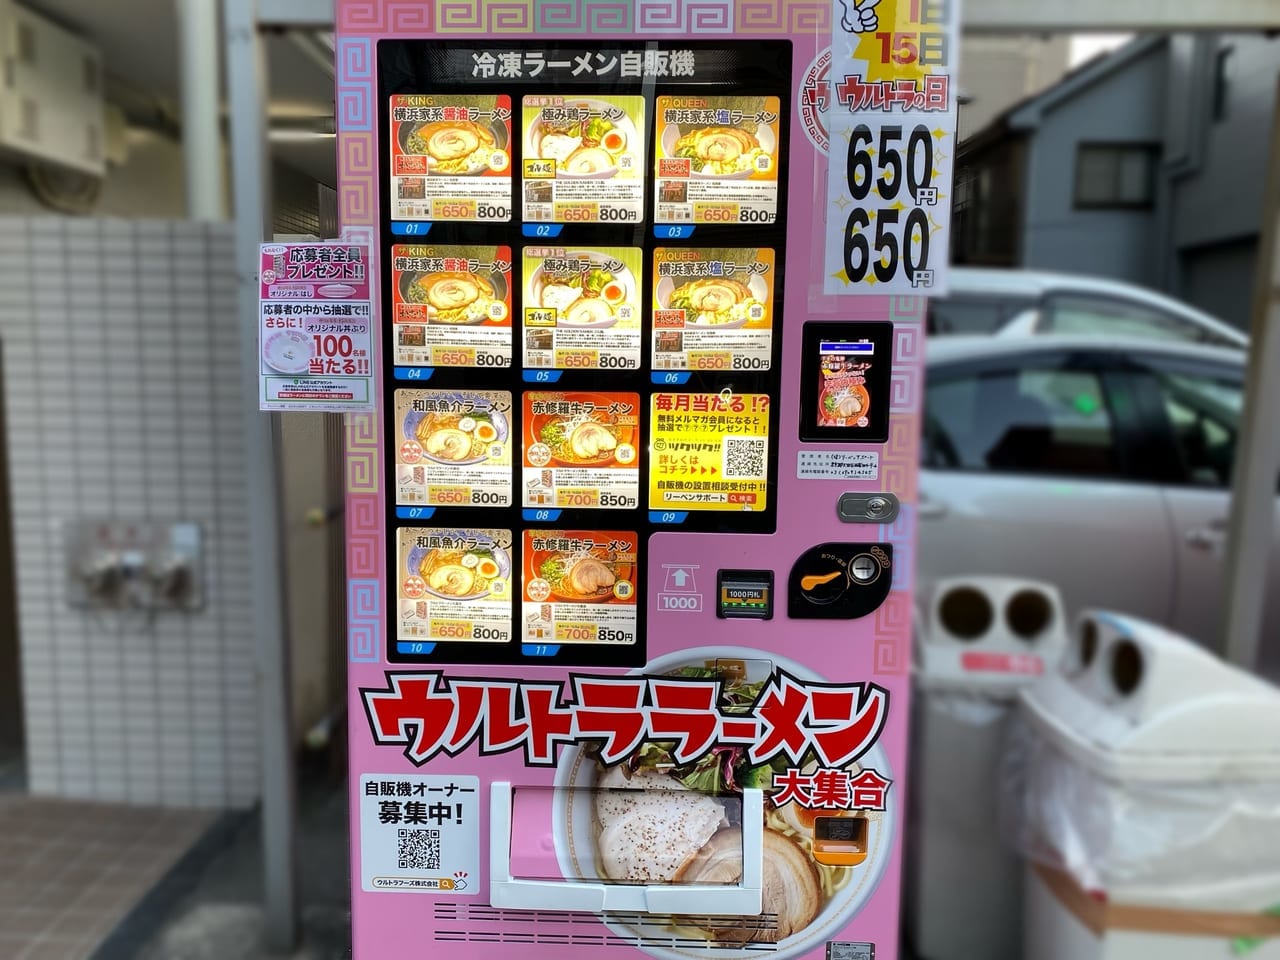 ウルトラフーズ株式会社の冷凍ラーメン自動販売機